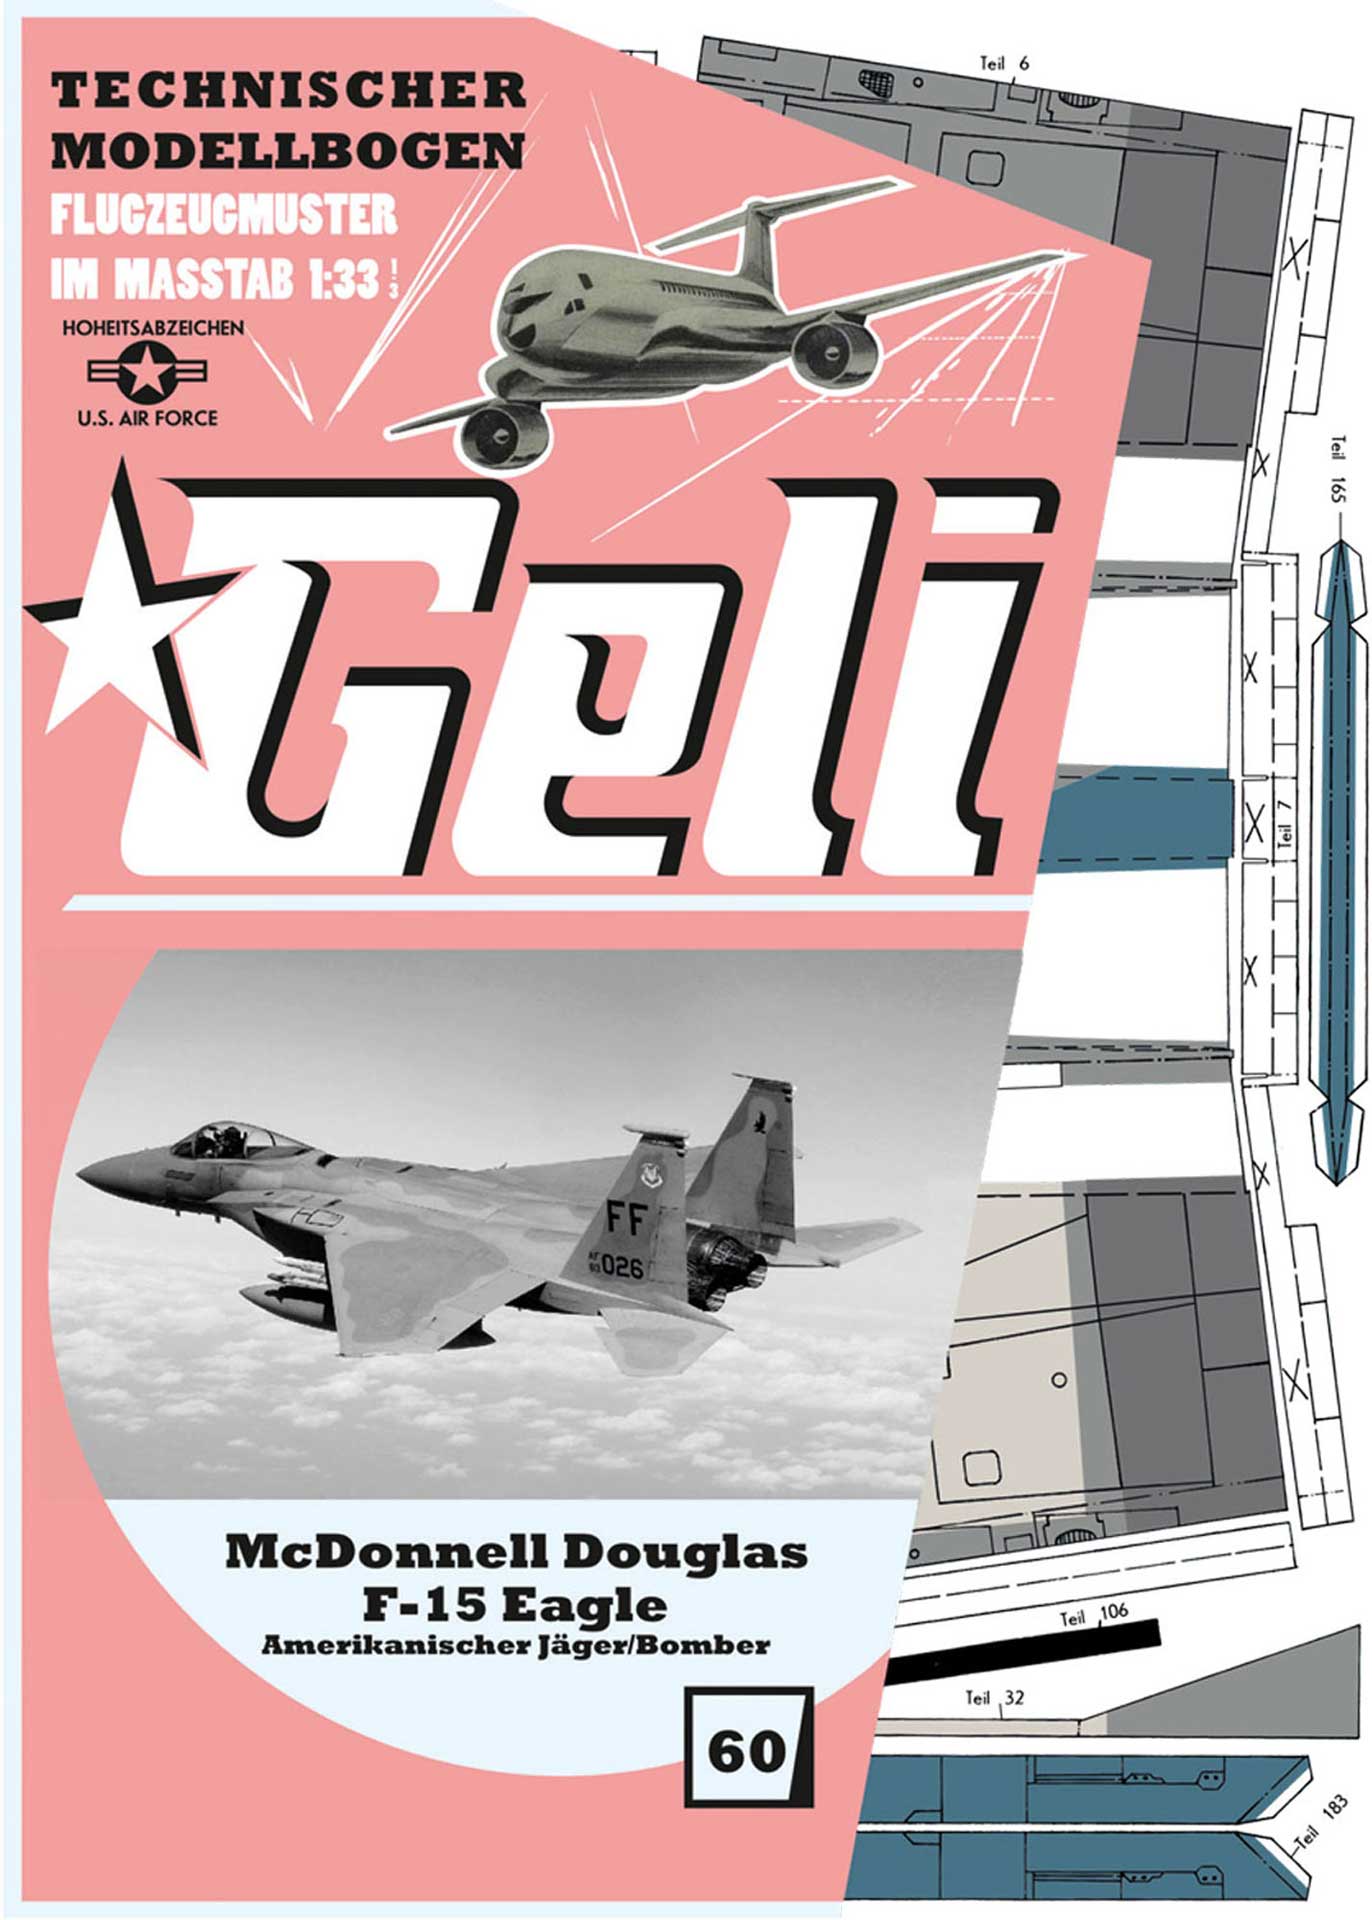 GELI MC DONELL DOUGLAS F-15 # 60 KARTONMODELL